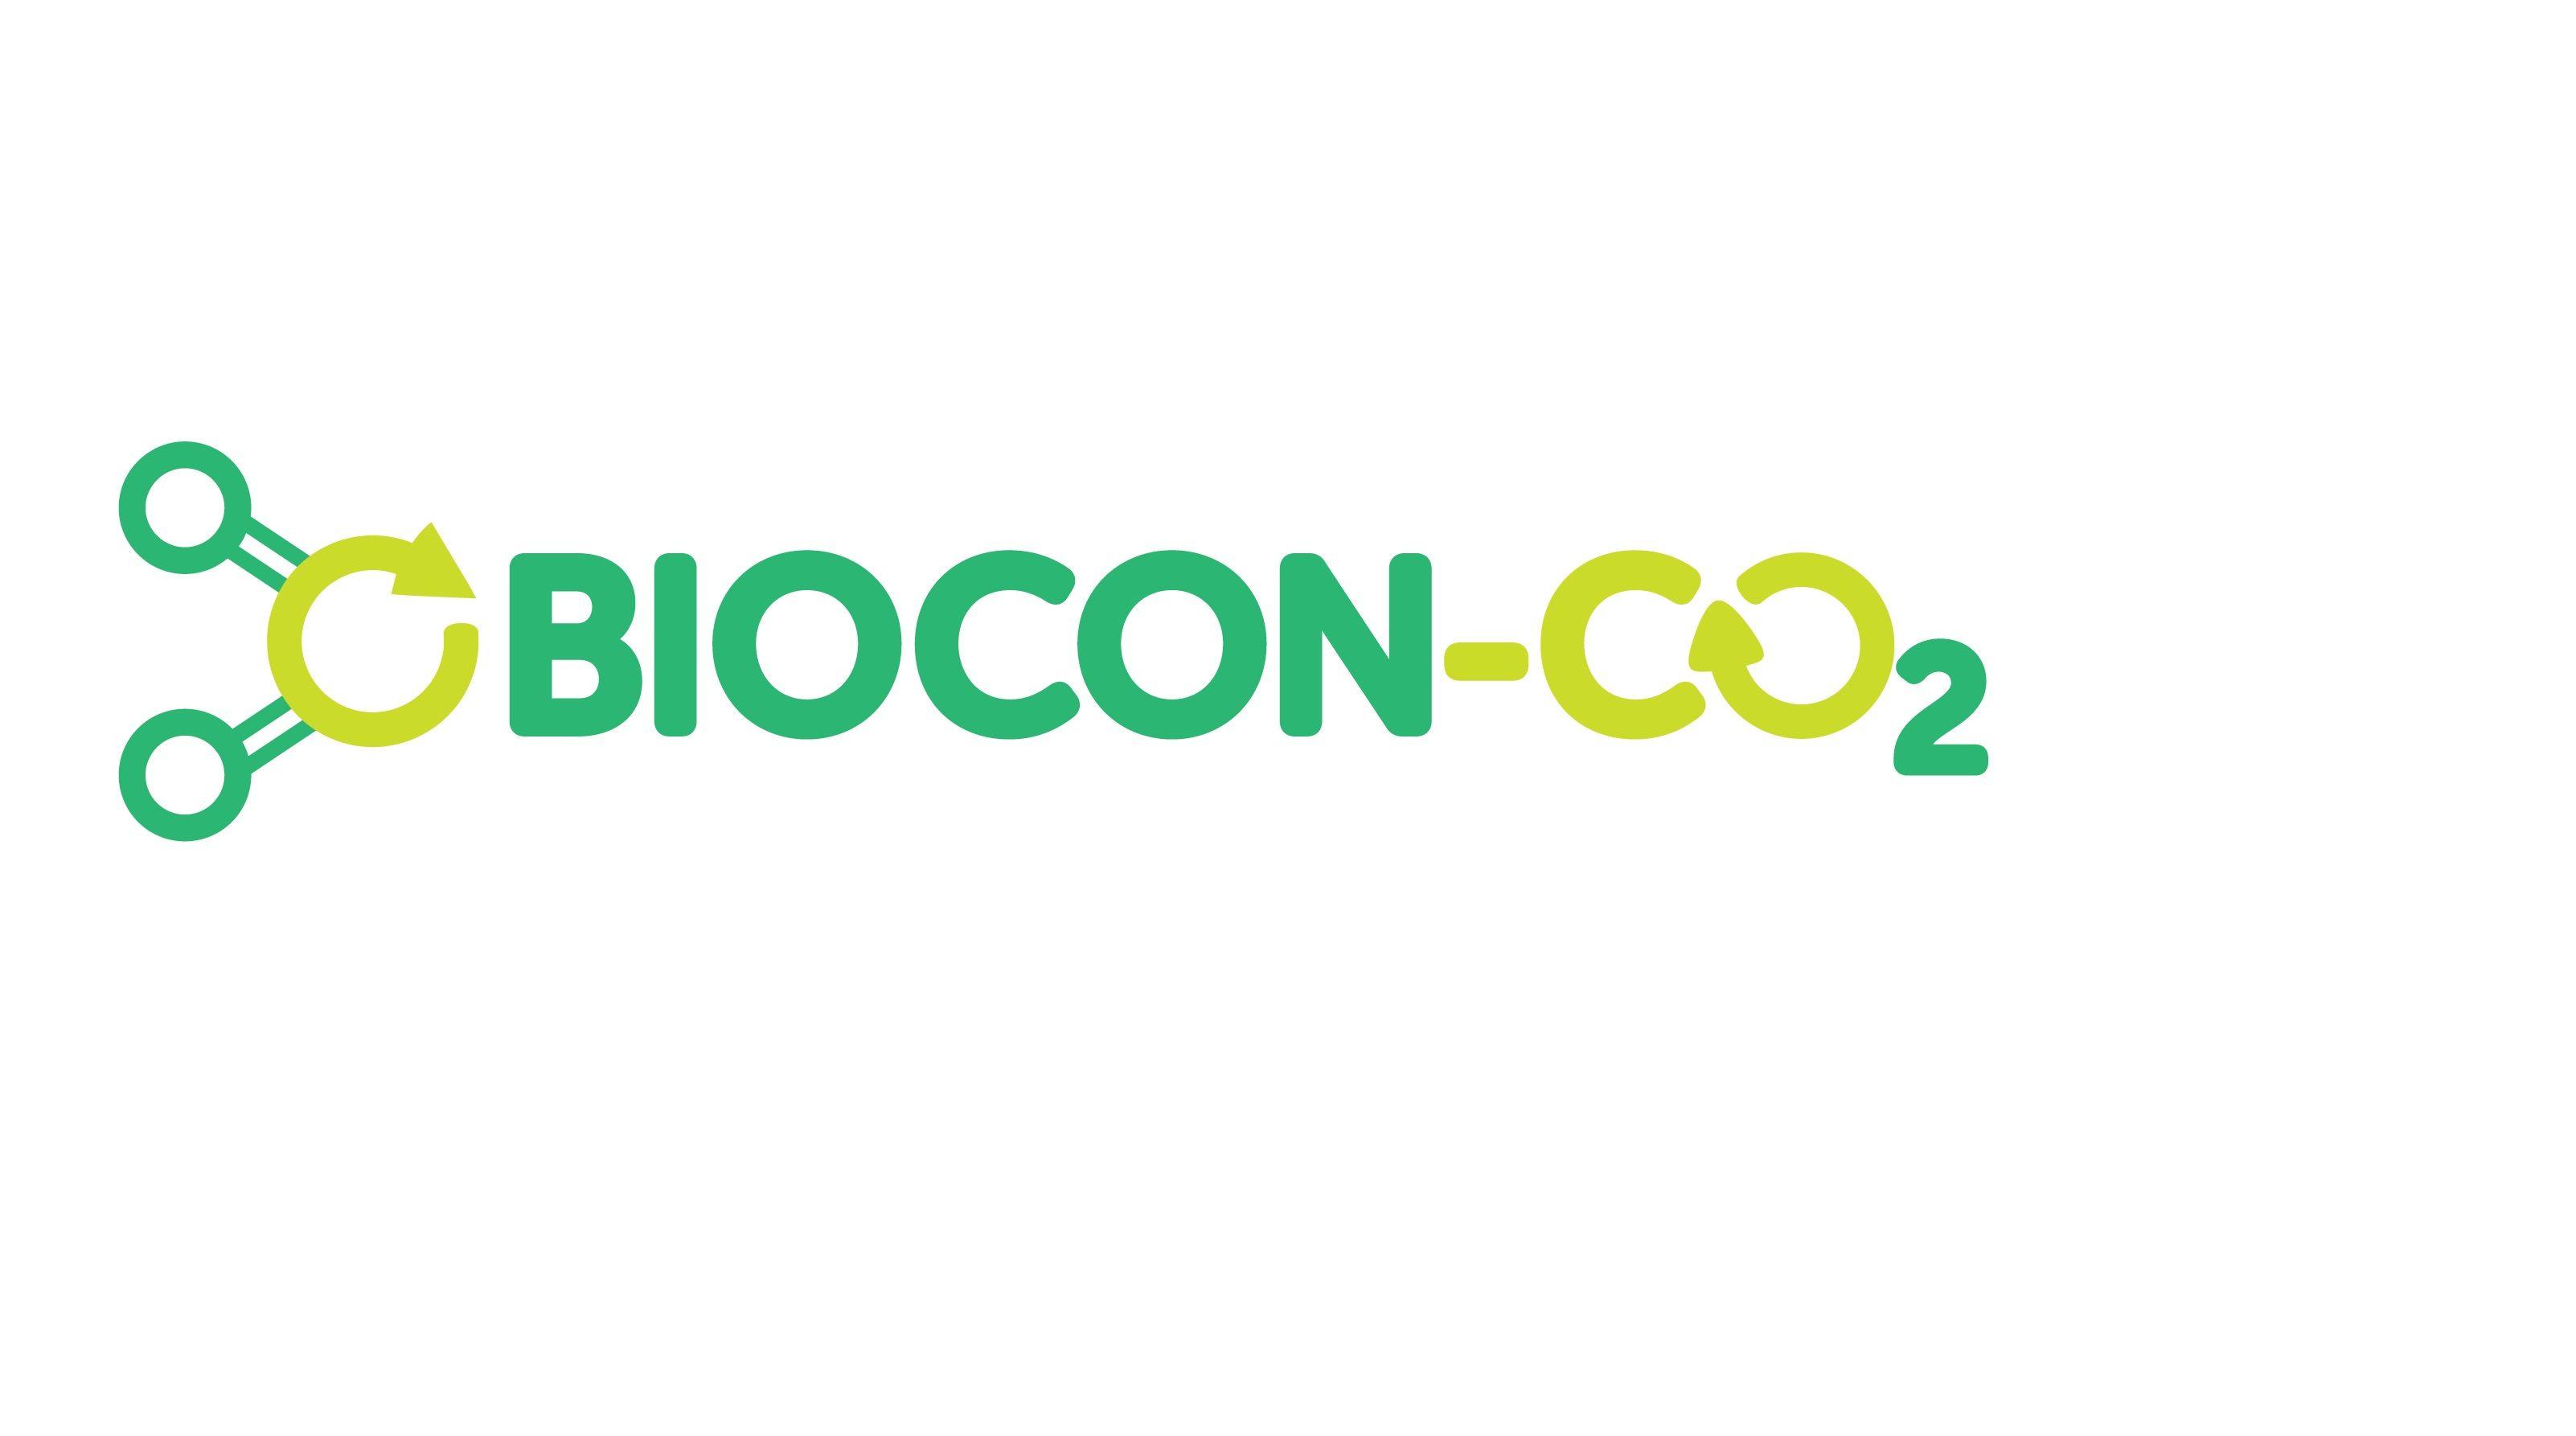 Biocon Logo - BIOCON LOGO COL-01 xx - BIOCON-CO2 - BIOCON-CO2